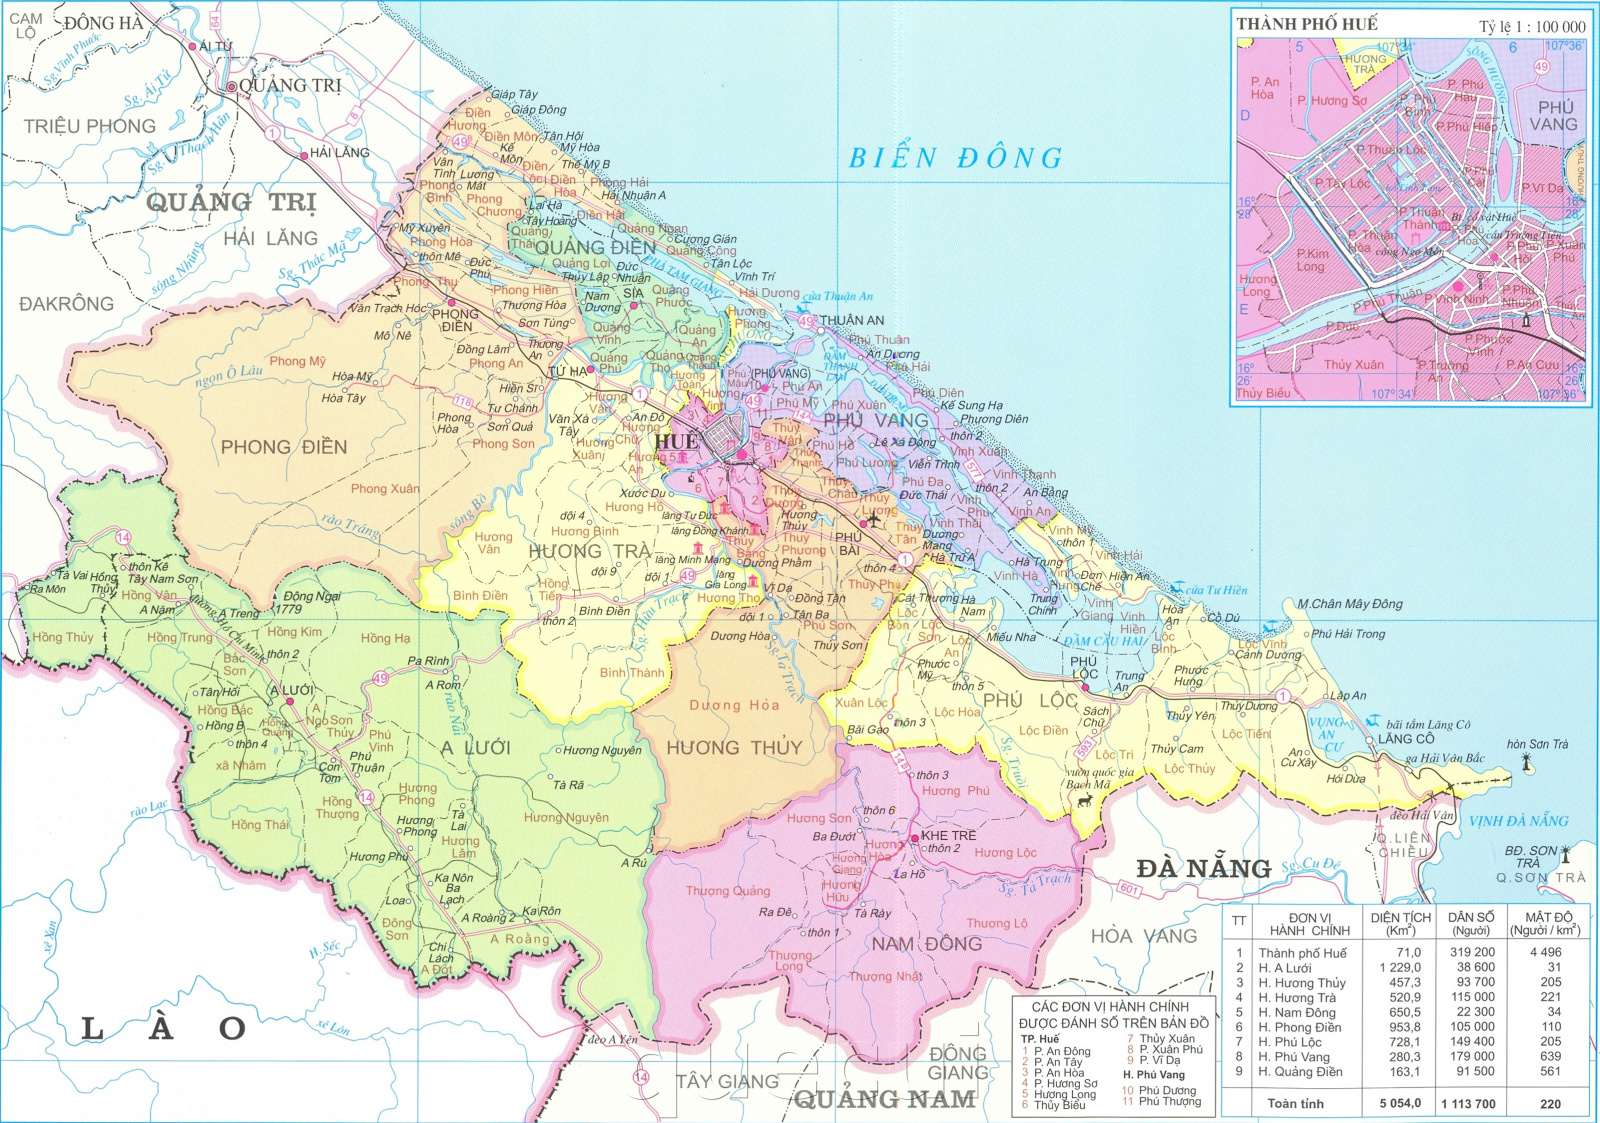 Bản đồ hành chính tỉnh Thừa Thiên Huế: Hãy cùng khám phá cấu trúc hành chính và địa giới hành chính của tỉnh Thừa Thiên Huế thông qua bản đồ hành chính mới nhất năm